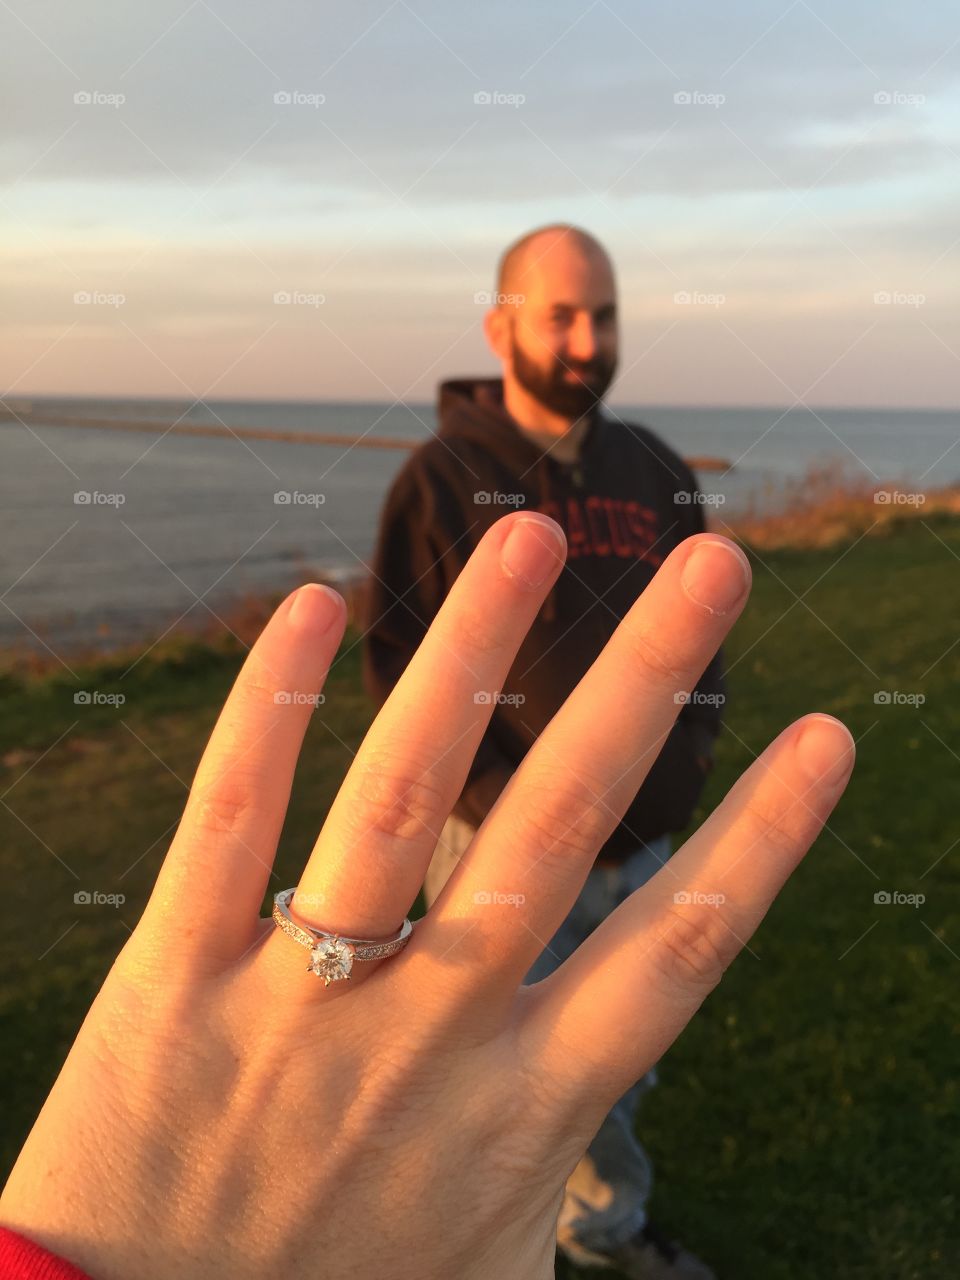 Engaged! 